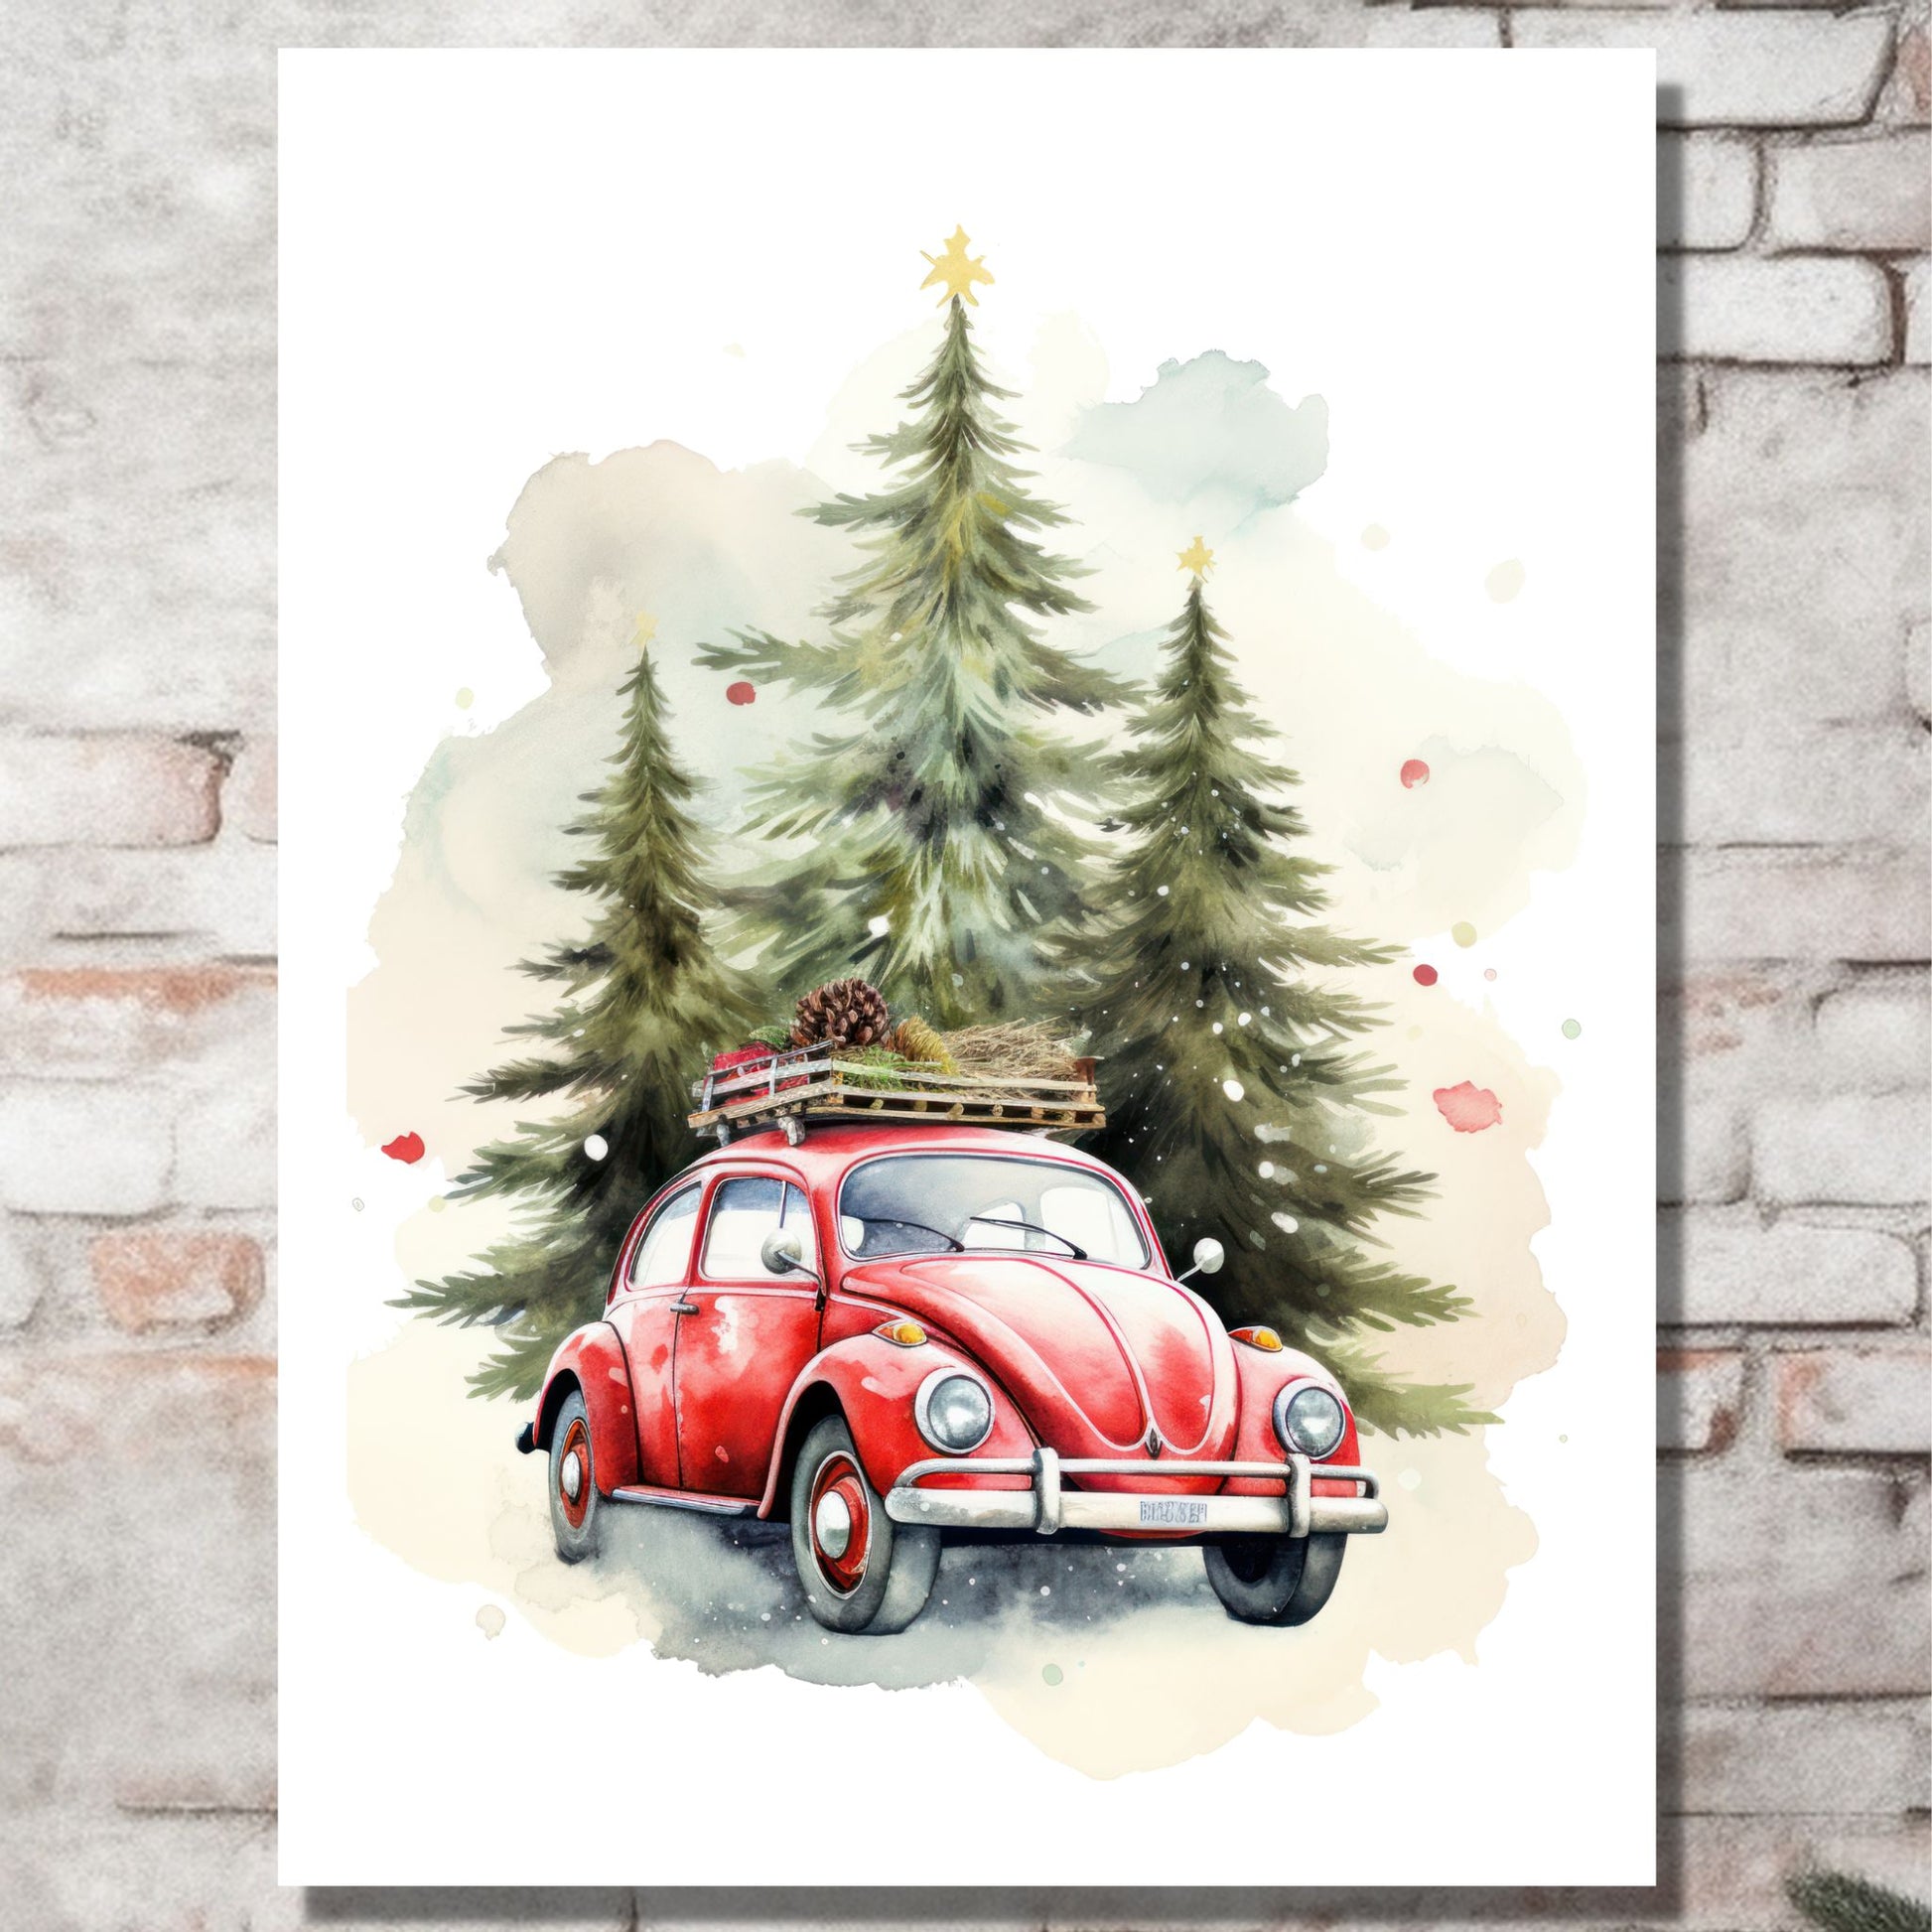 Plakat og lerret med grafisk julemotiv av gammel, rød volkswagen boble. Bilen kjører i en skog, og på taket er den lastet med juledekorasjoner. På bildet henger motivet på lerret på en murvegg.